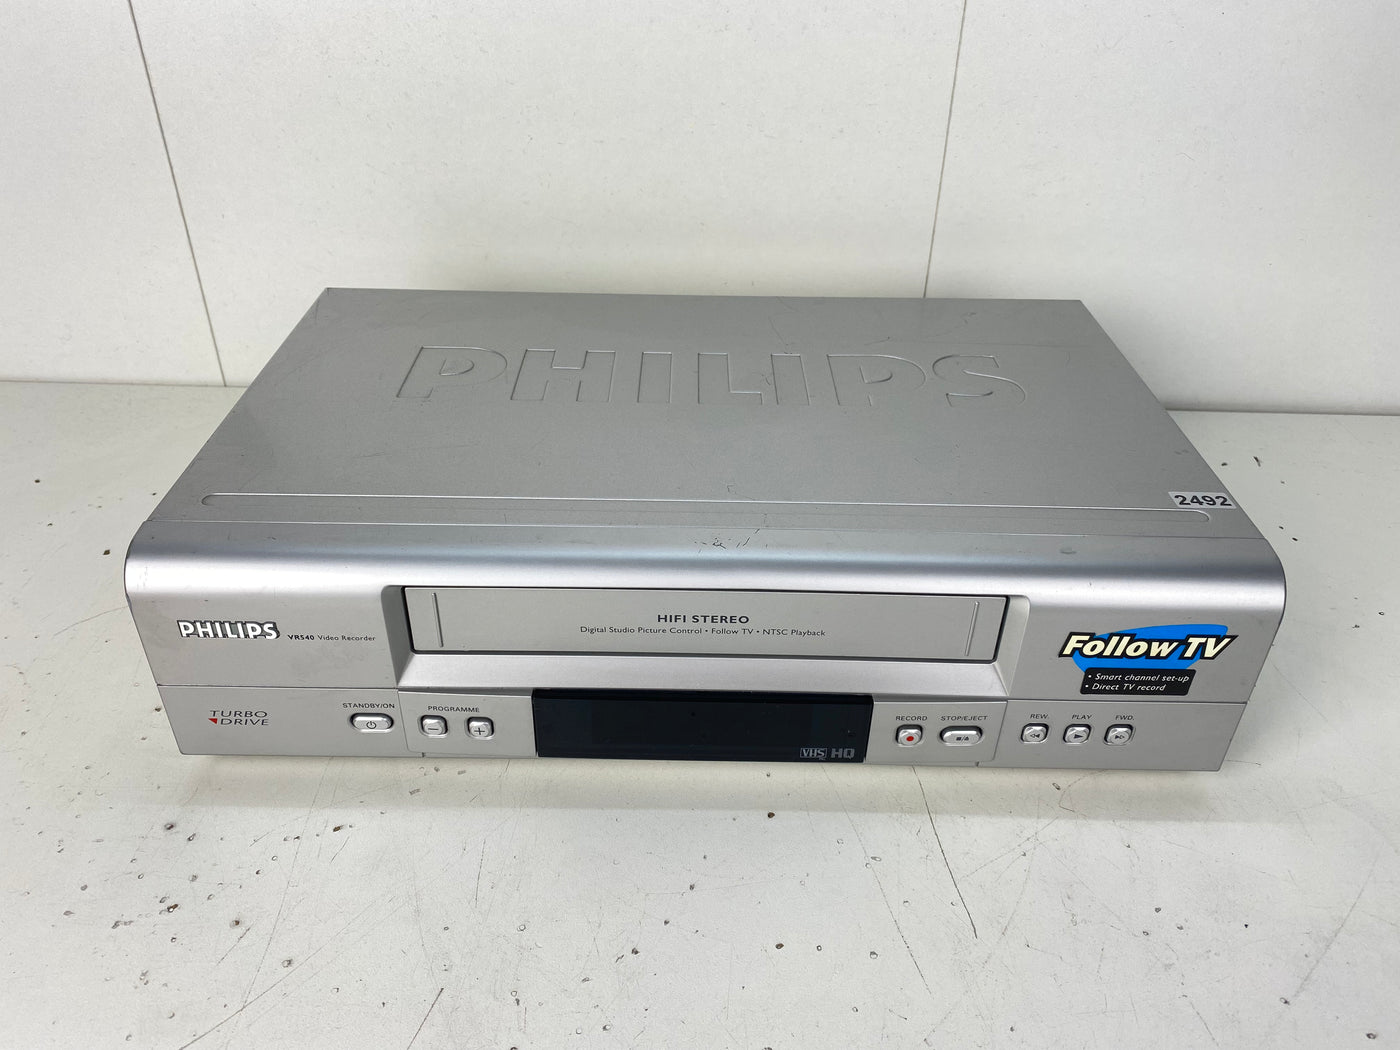 Philips VR540 Video Cassette Recorder VHS